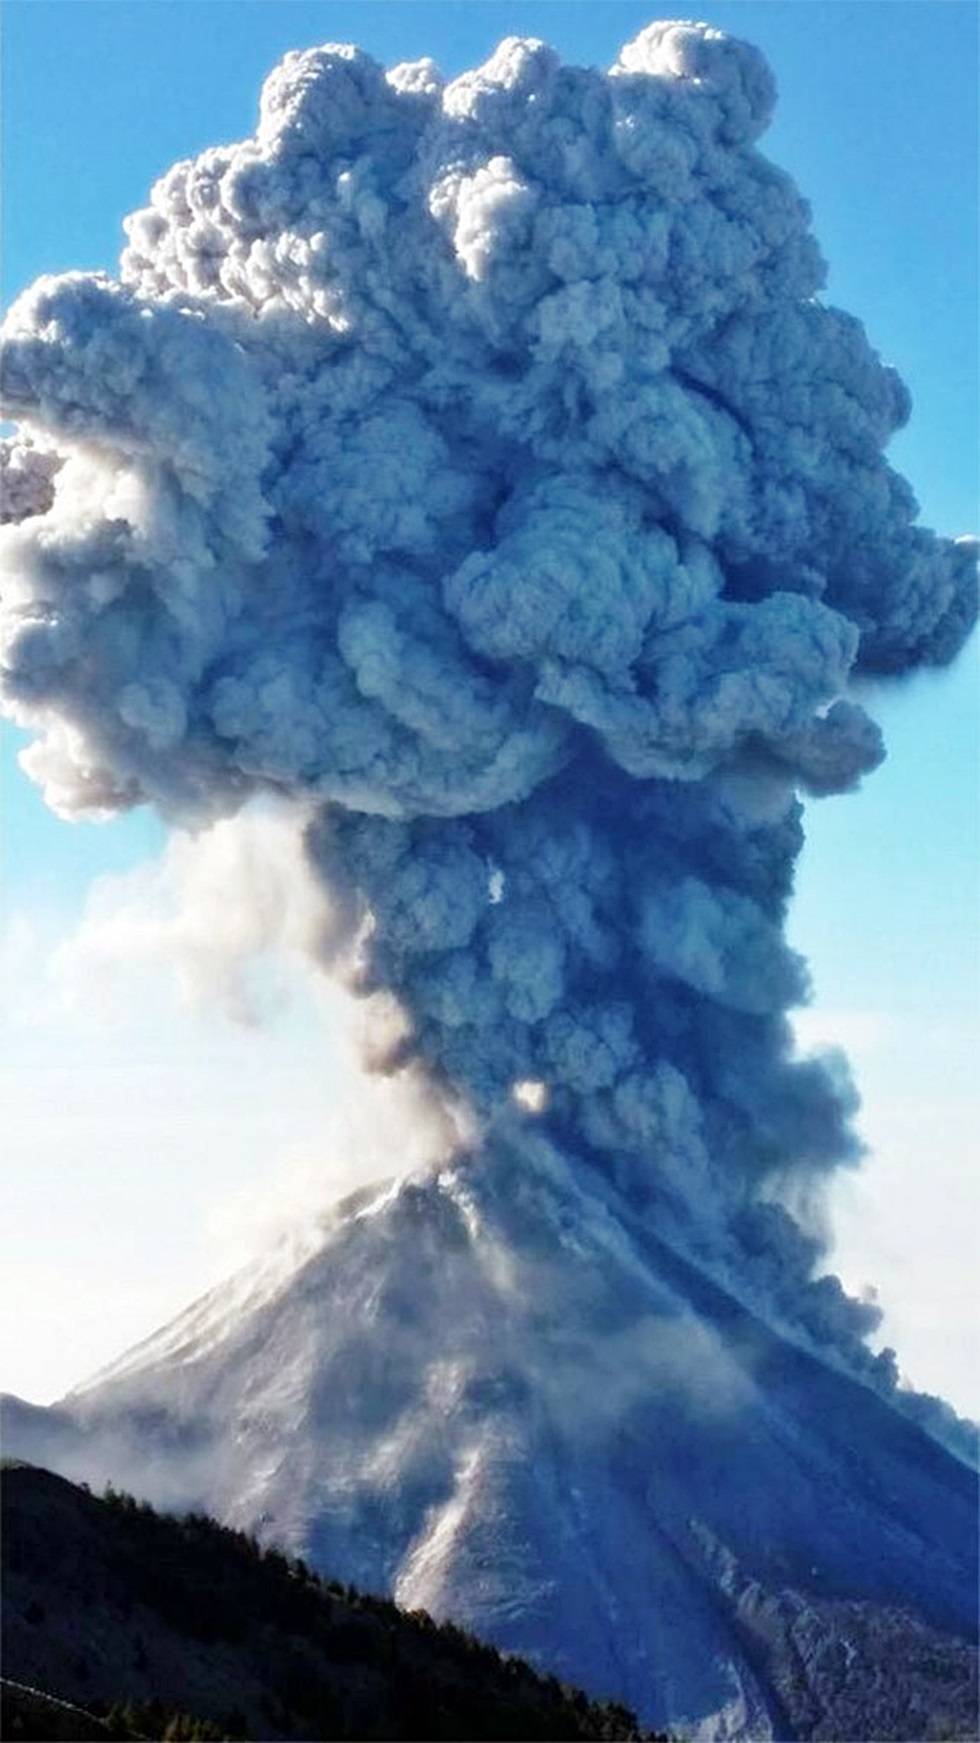 Lanza volcán de Colima espectacular exhalación de cuatro kilómetros